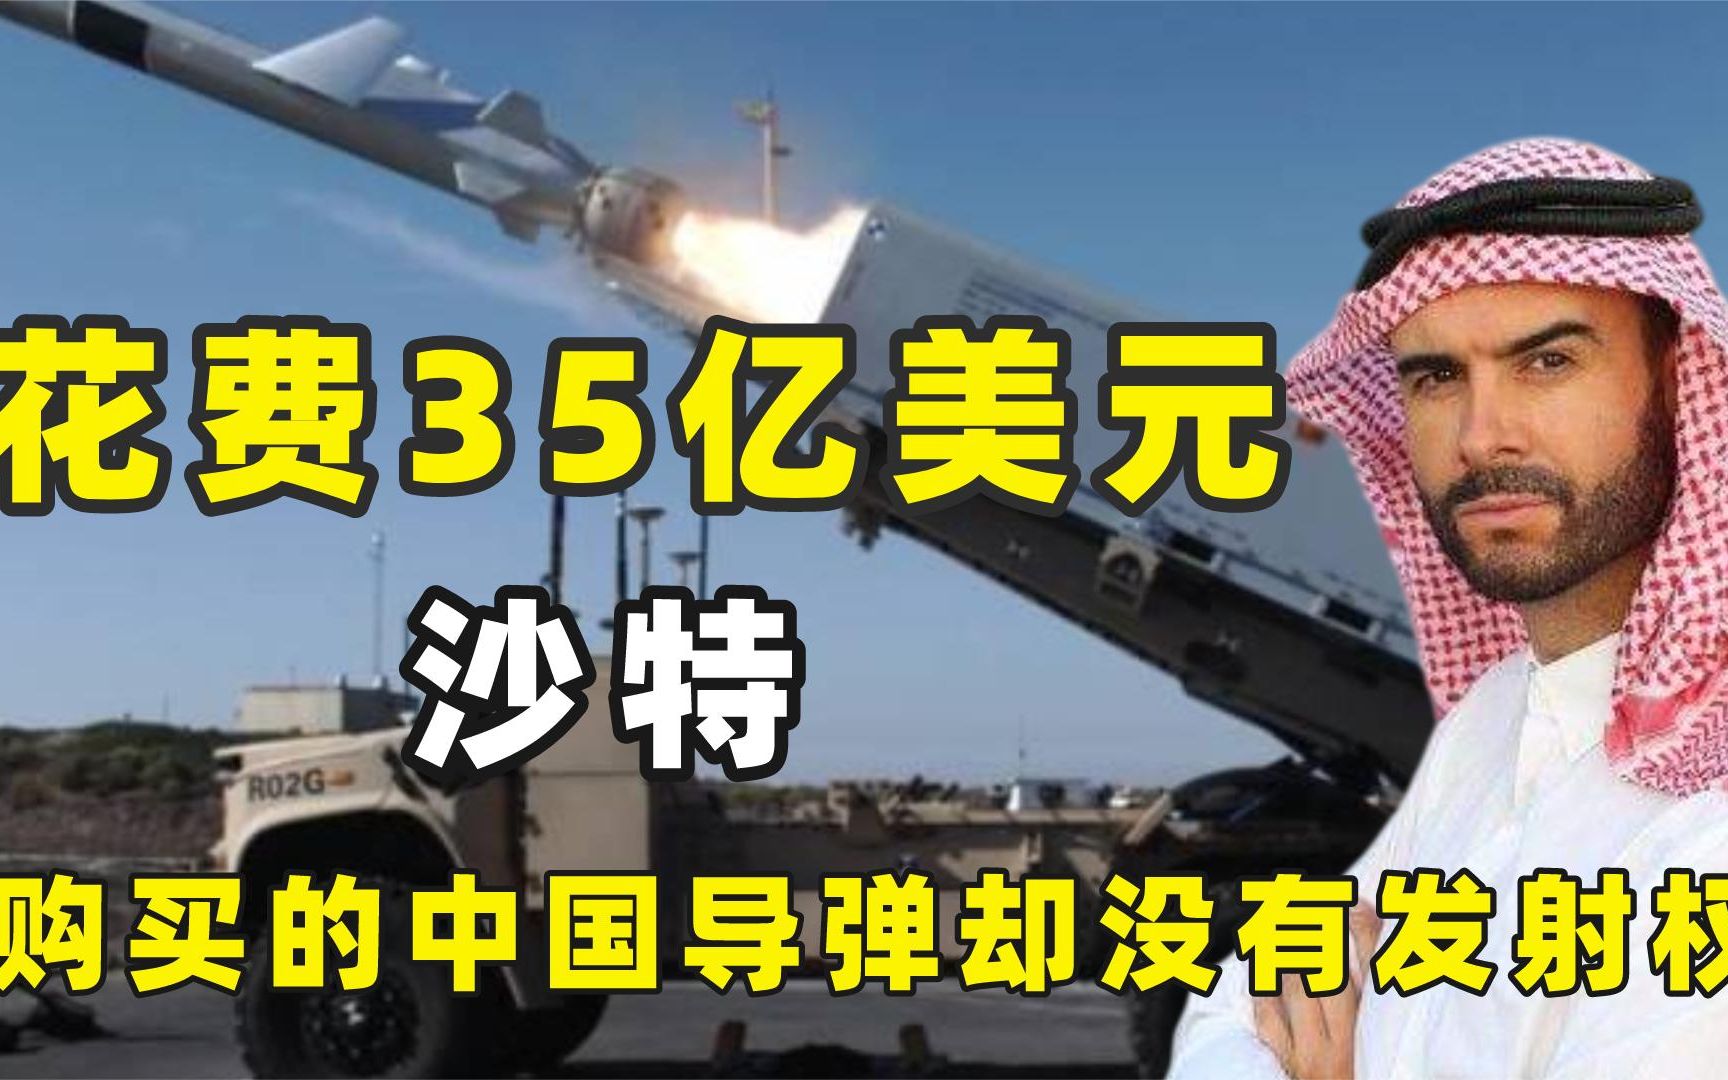 沙特购买中国的东风导弹花费了10几倍的价格还没有发射按钮